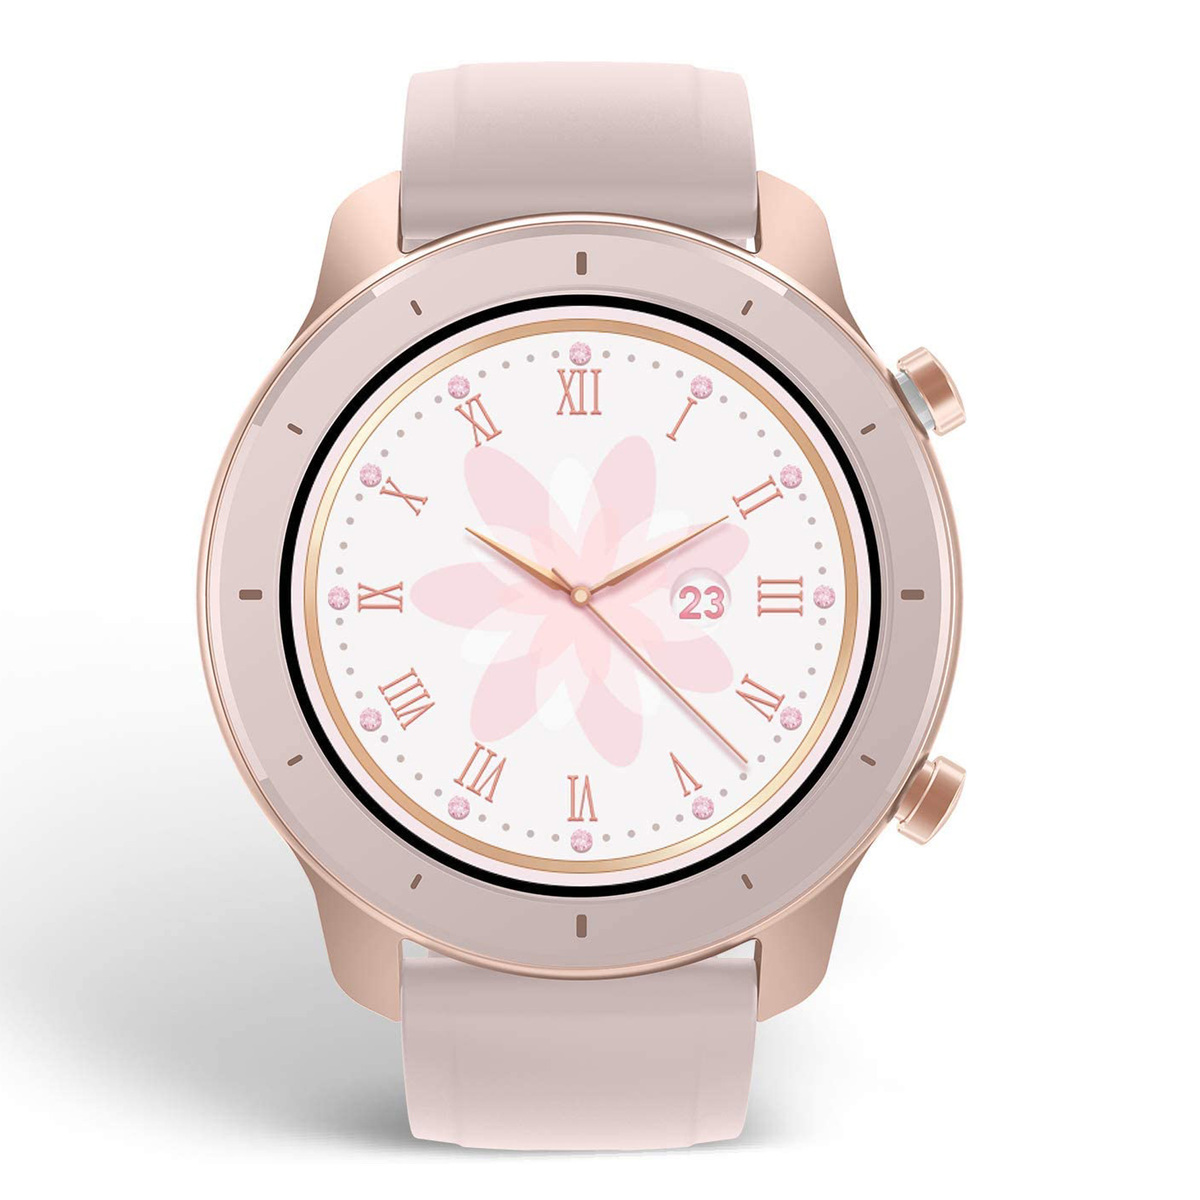 Amazfit GTR A1910 Smart Watch 42mm Cherry Blossom Pink(A1910-GTR-42-CHERY BLSM PINK )